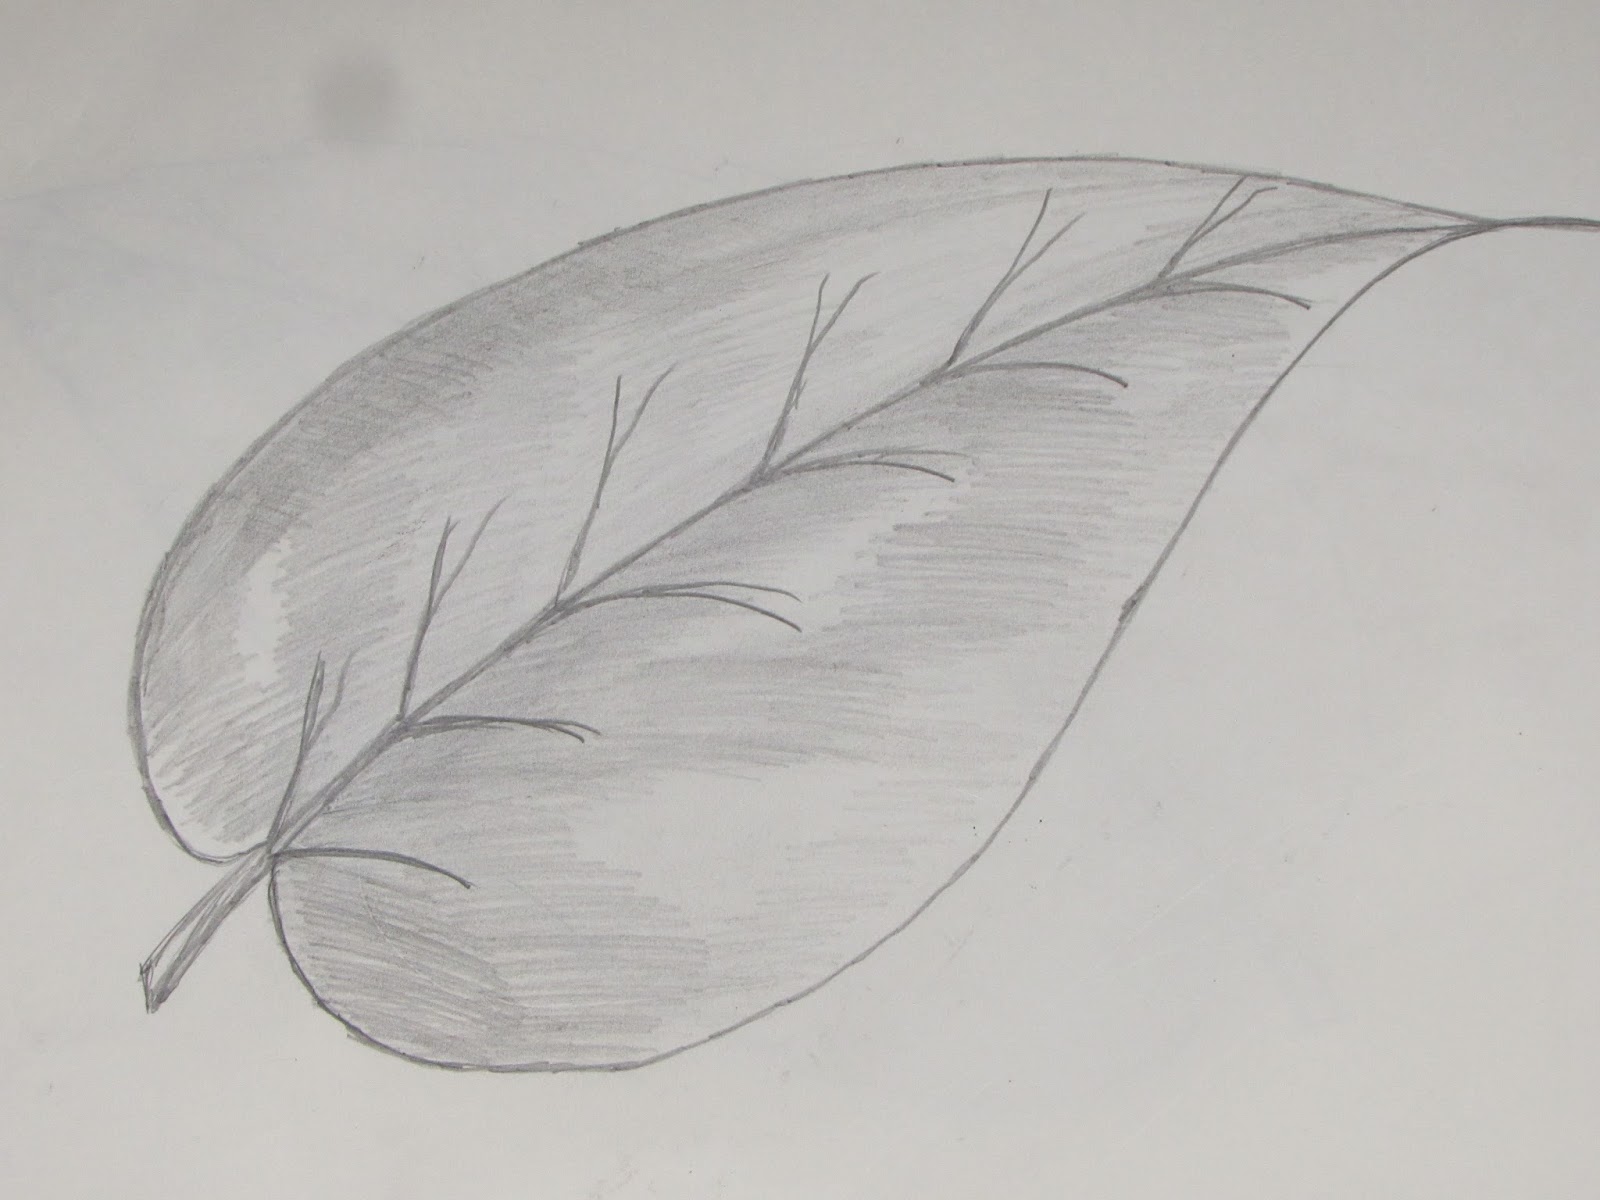 Картинка лист карандашом. Листья рисунок карандашом для срисовки. Листья и цветы карандашом. Зарисовки листьев карандашом. Рисунок листьев карандашом.